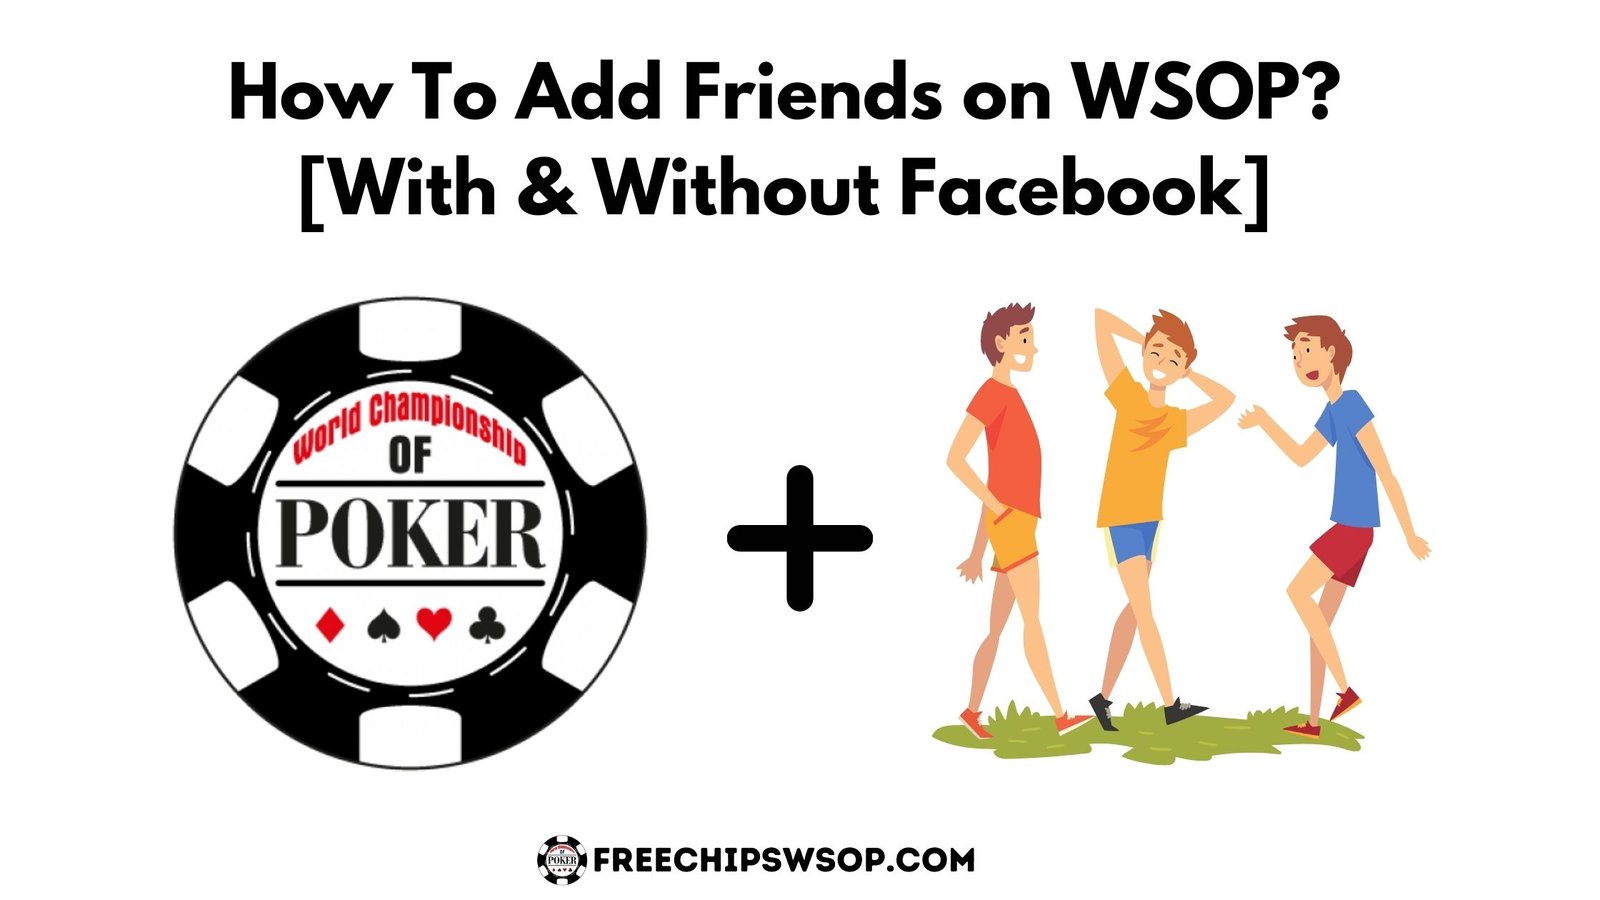 Add Friends on WSOP